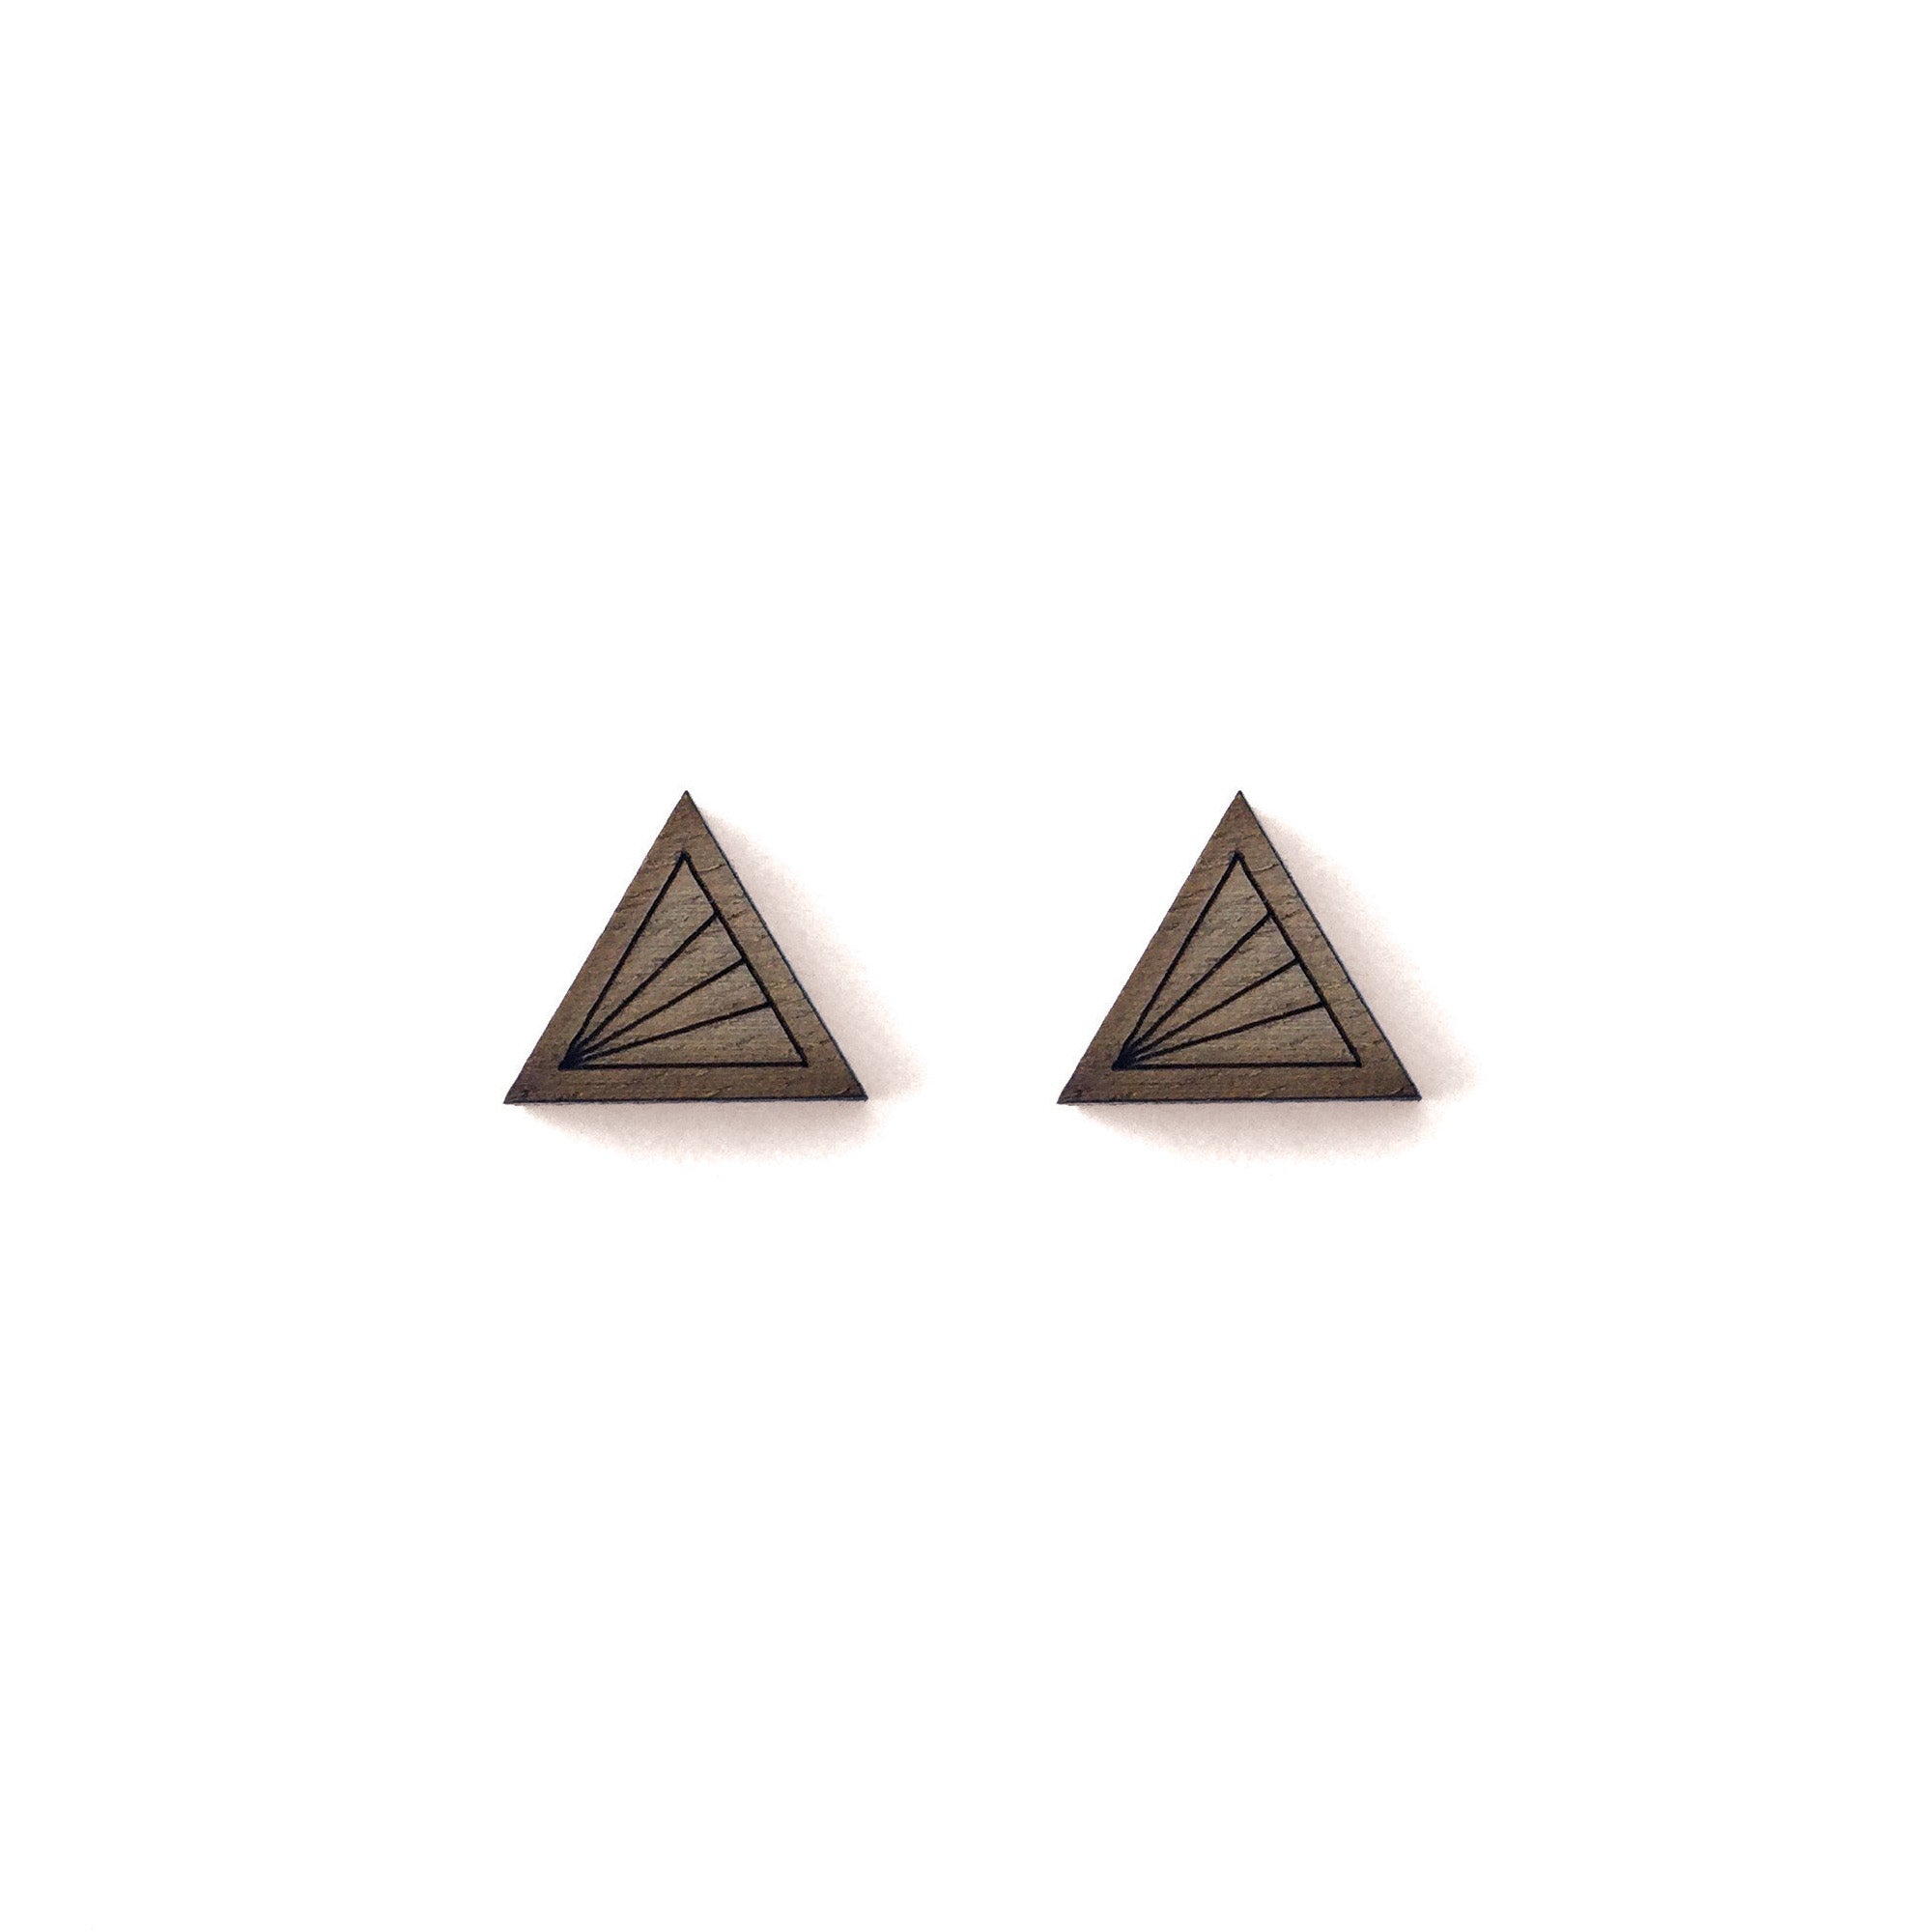 Geometric Walnut Earrings - Triangle